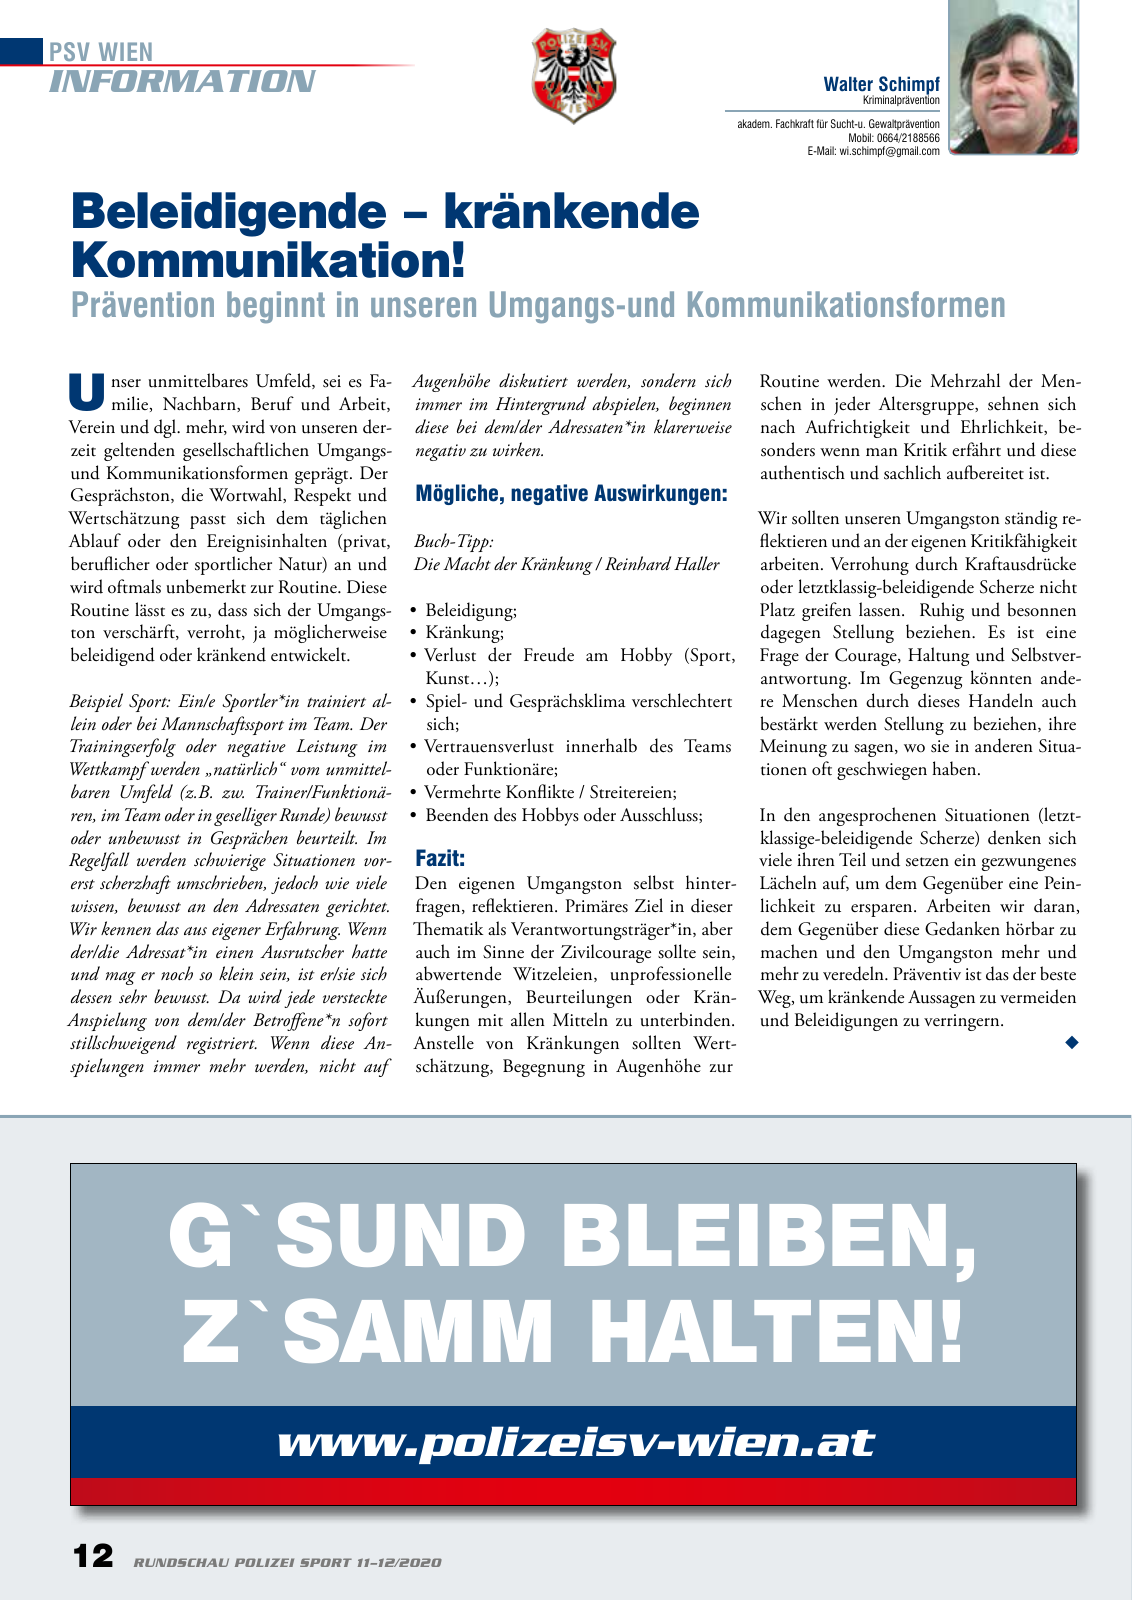 Vorschau Rundschau Polizei Sport 11-12/2020 Seite 12